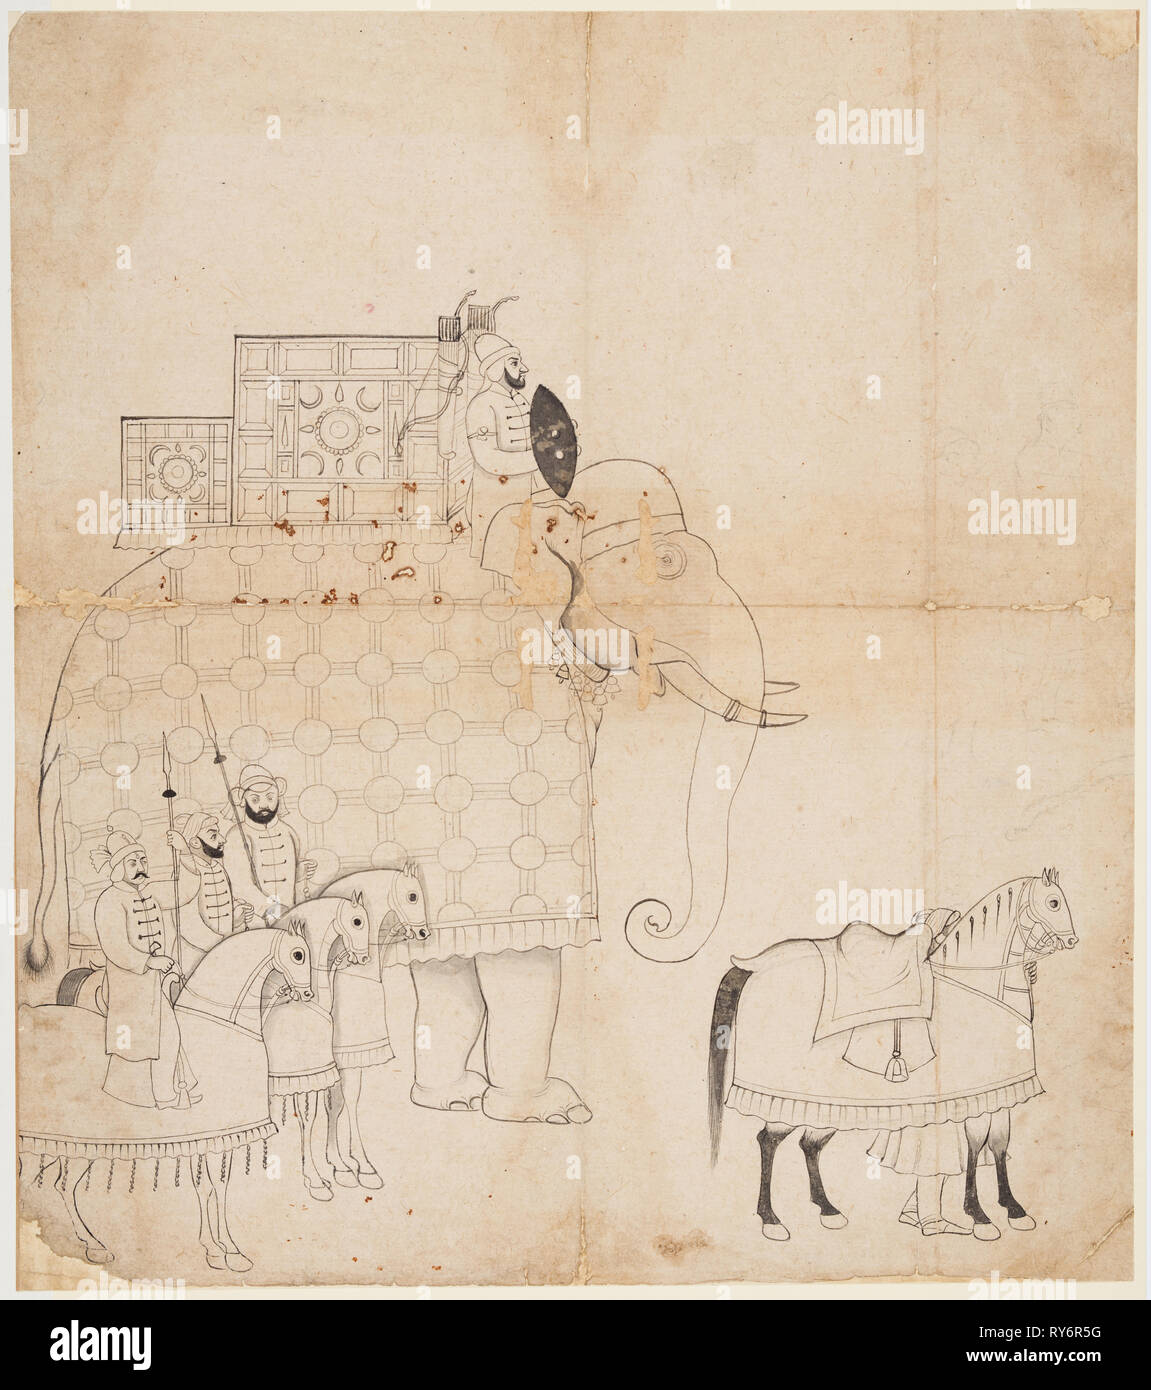 Eine Zeichnung von Caparisoned Elefanten und Pferde, C. 1760. Indien, Jammu. Miniatur: 41 x 36,2 cm (16 1/8 x 14 1/4 in Stockfoto